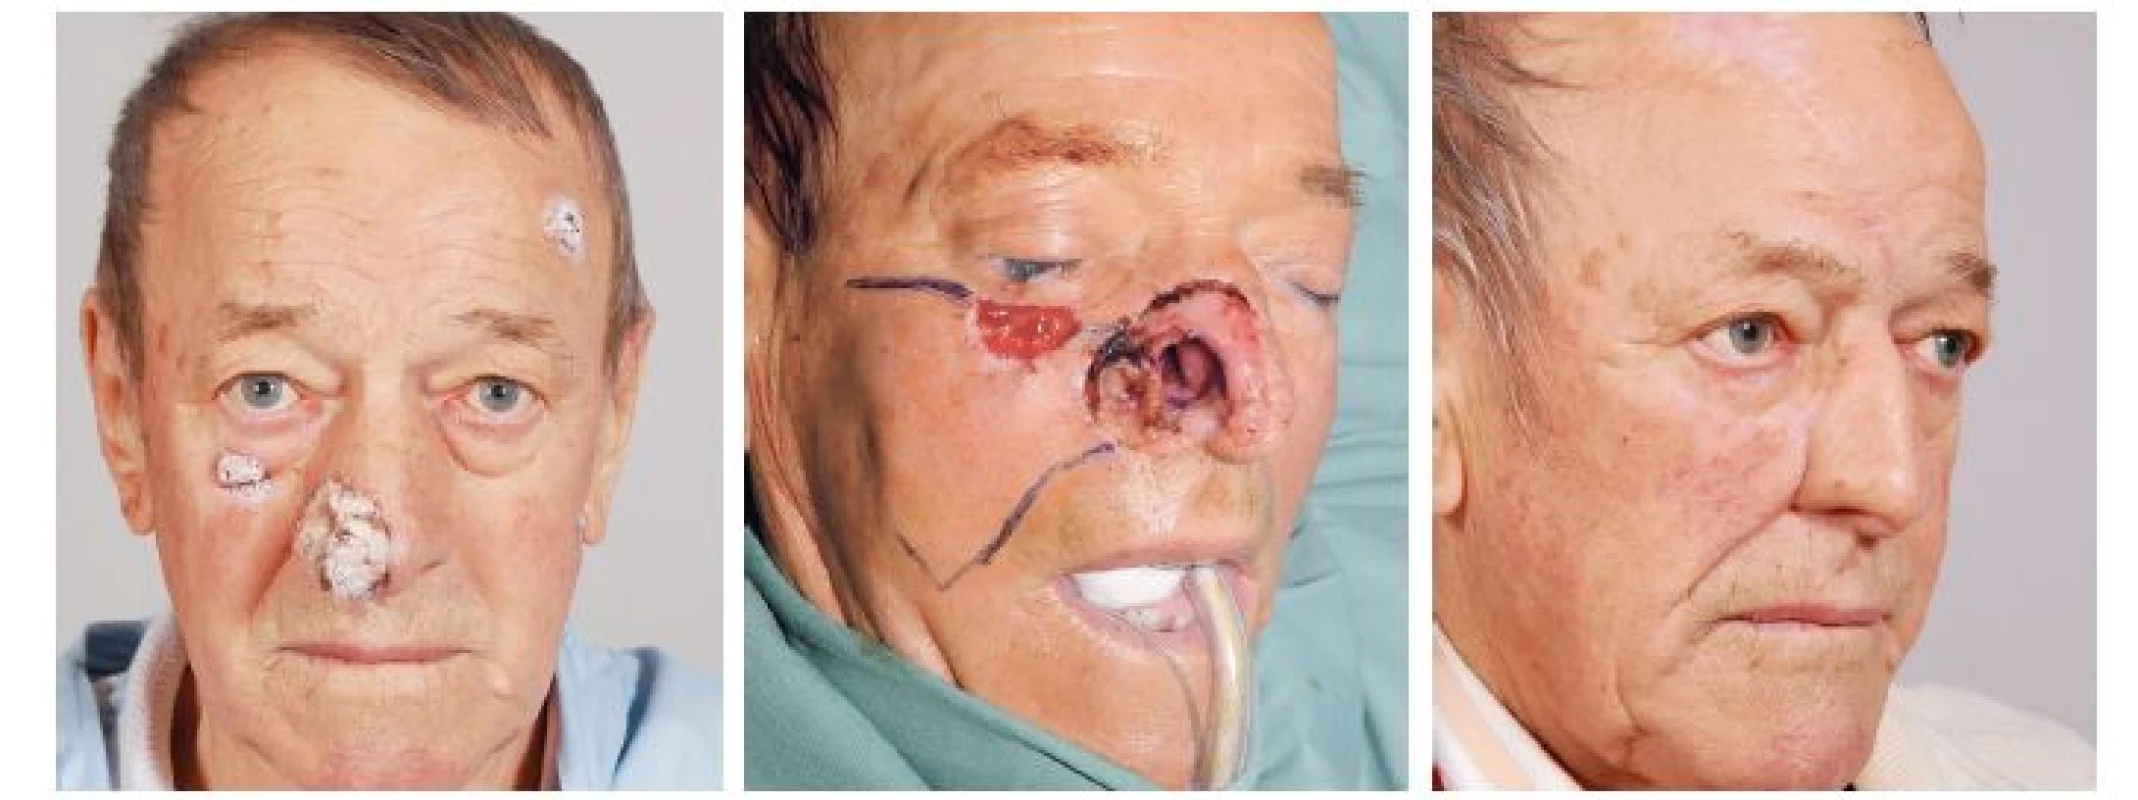 Případ 3 – rozsáhlý basaliom pravé poloviny nosu: A) stav před operací, B) stav po radikální resekci tumoru, C) stav po dokončení
rekonstrukce nosu.